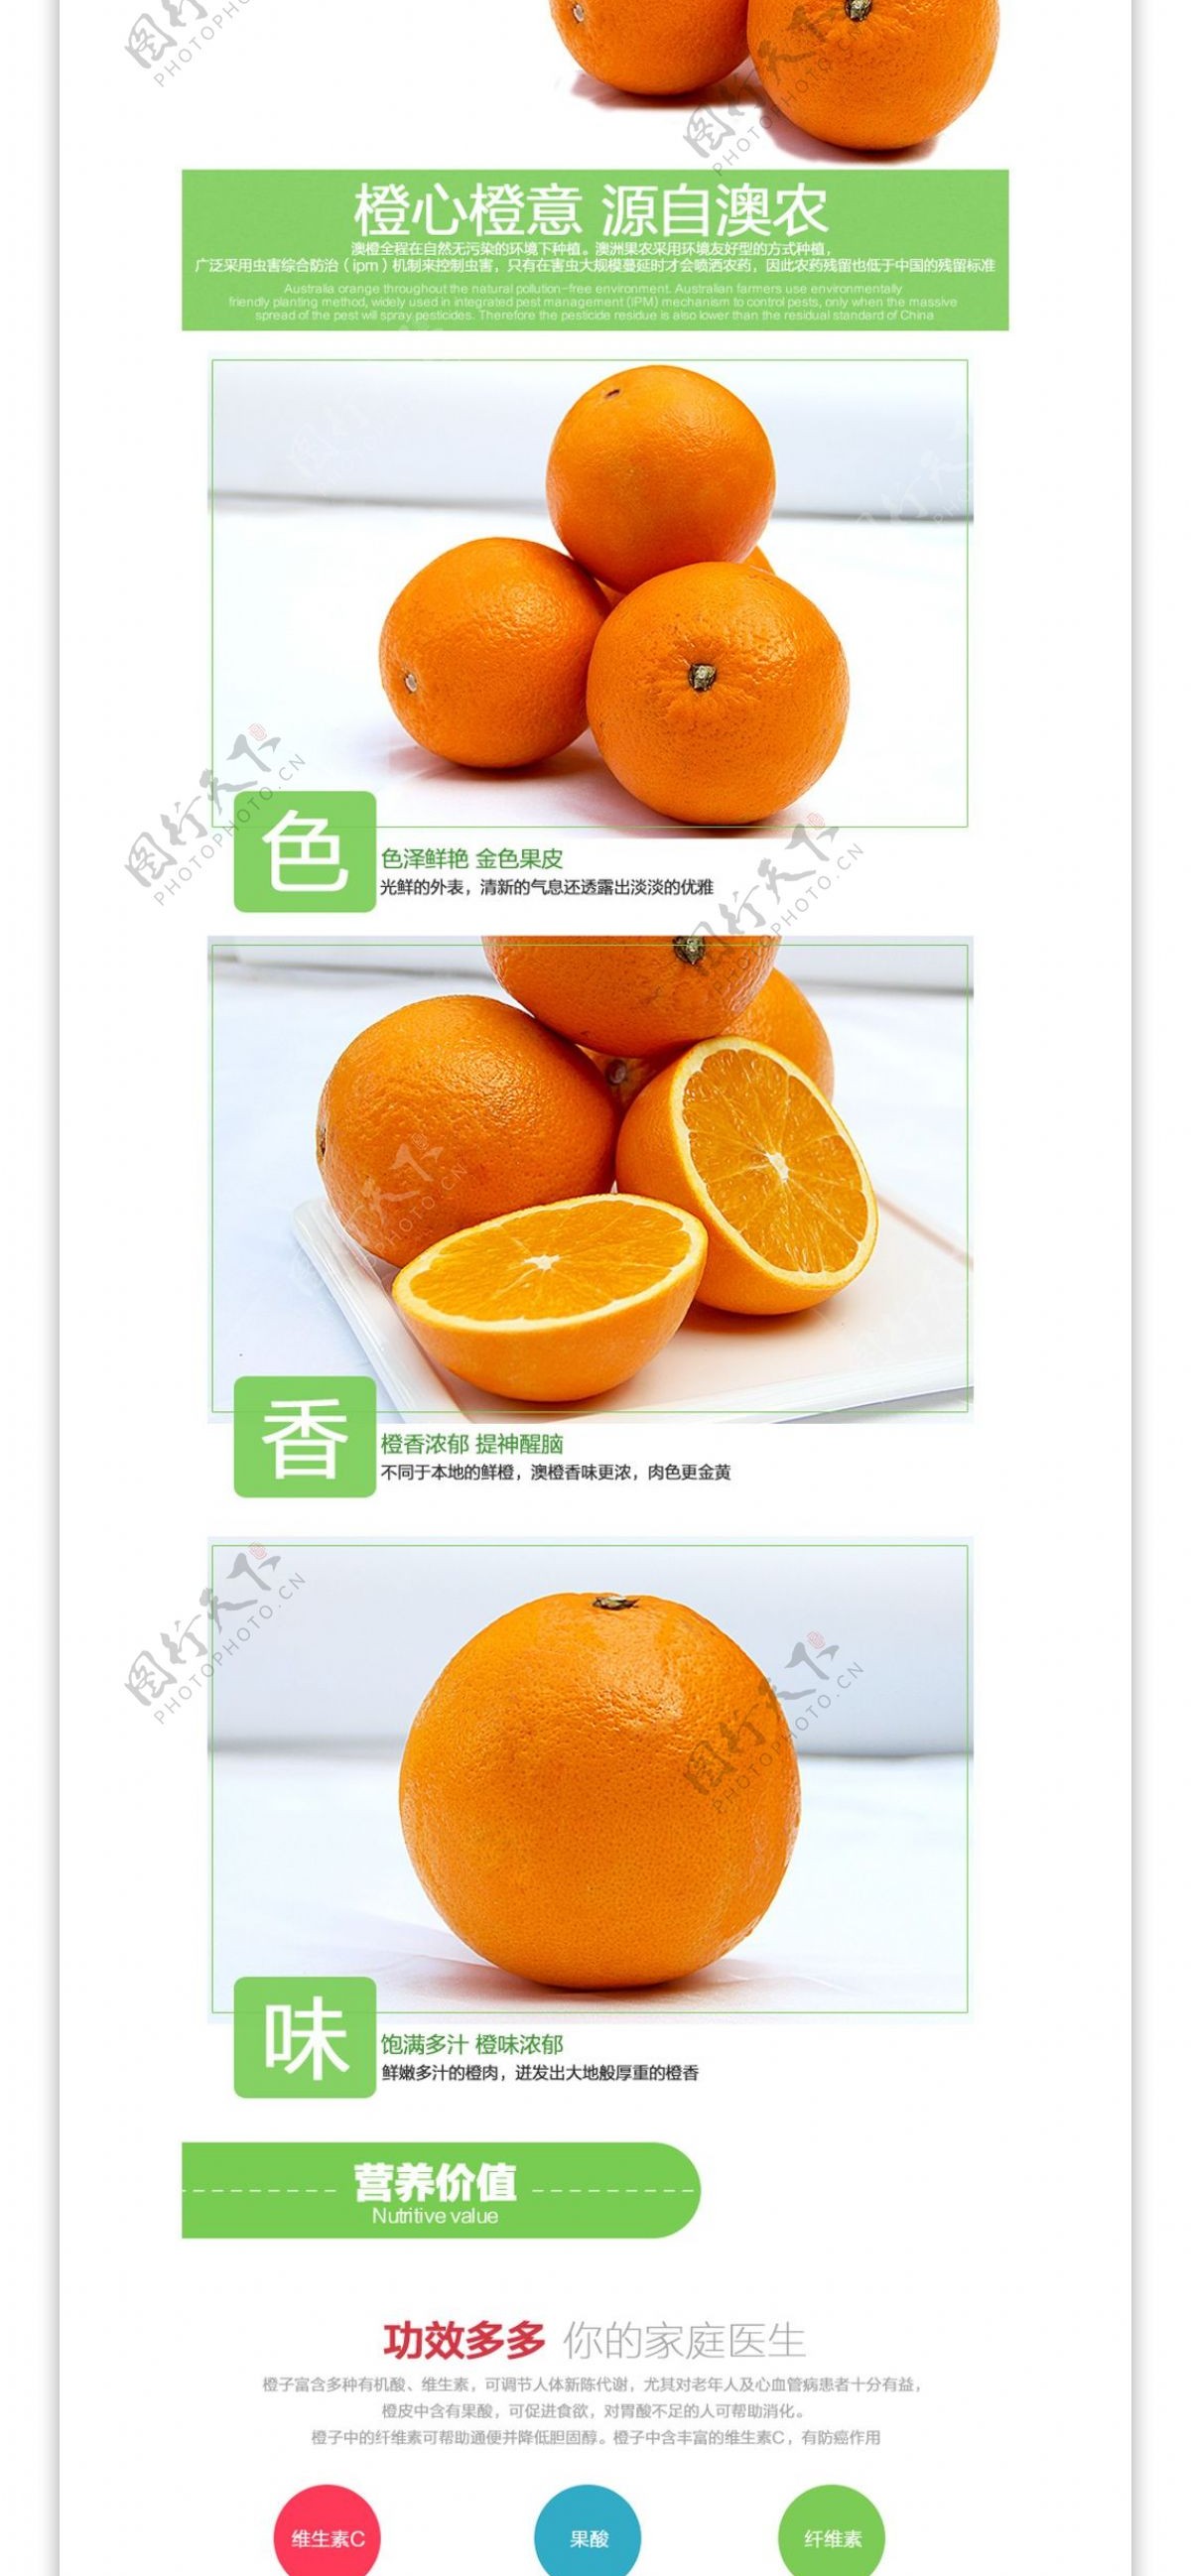 天猫淘宝橙子详情页模板